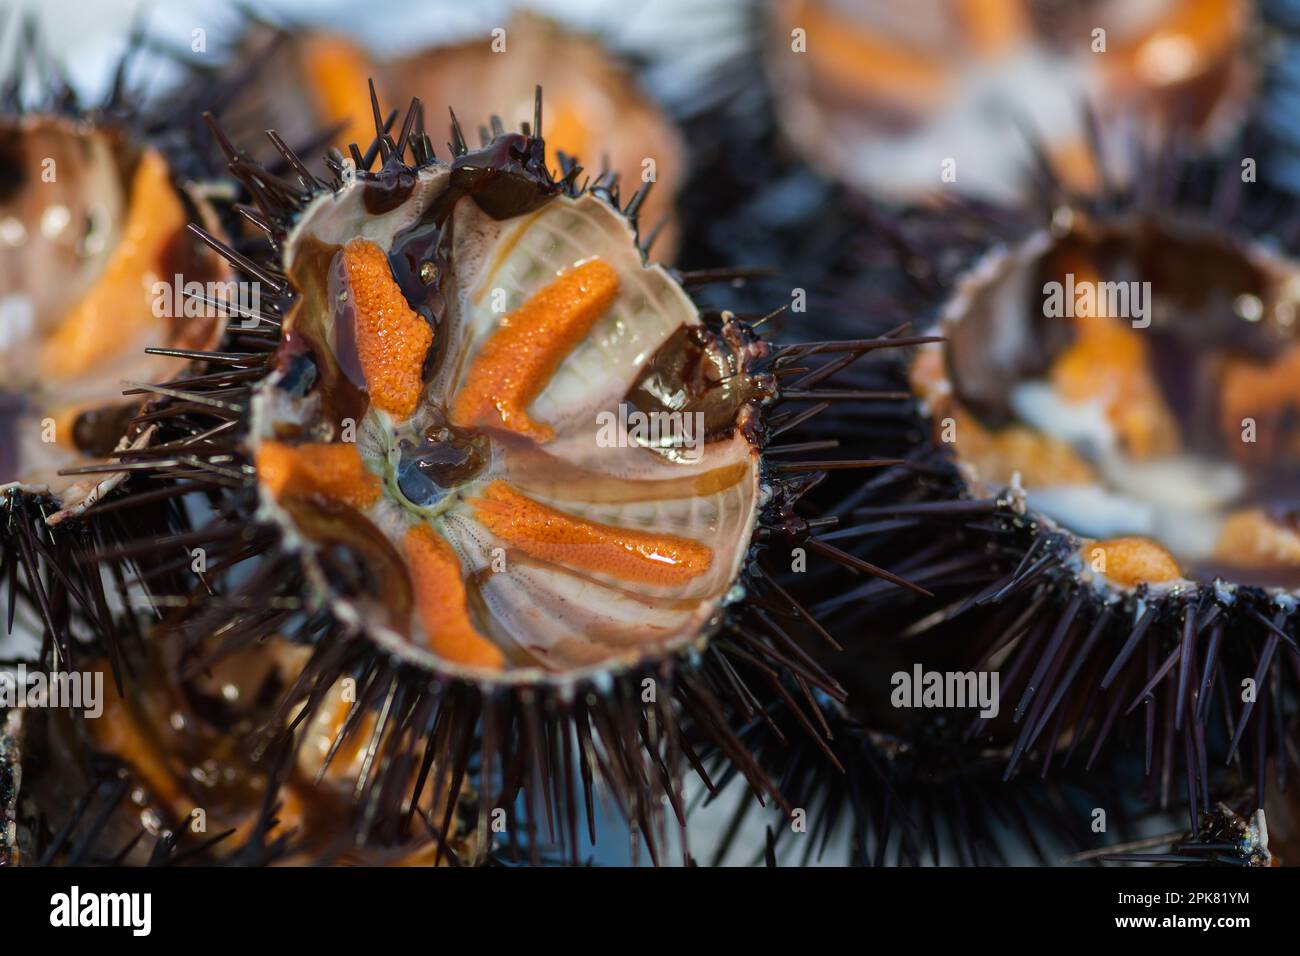 Oursin de mer avec des oeufs d'orange dans un plat prêt à manger dans un marché de poisson, ou pêche, fruits de mer, sushi Banque D'Images